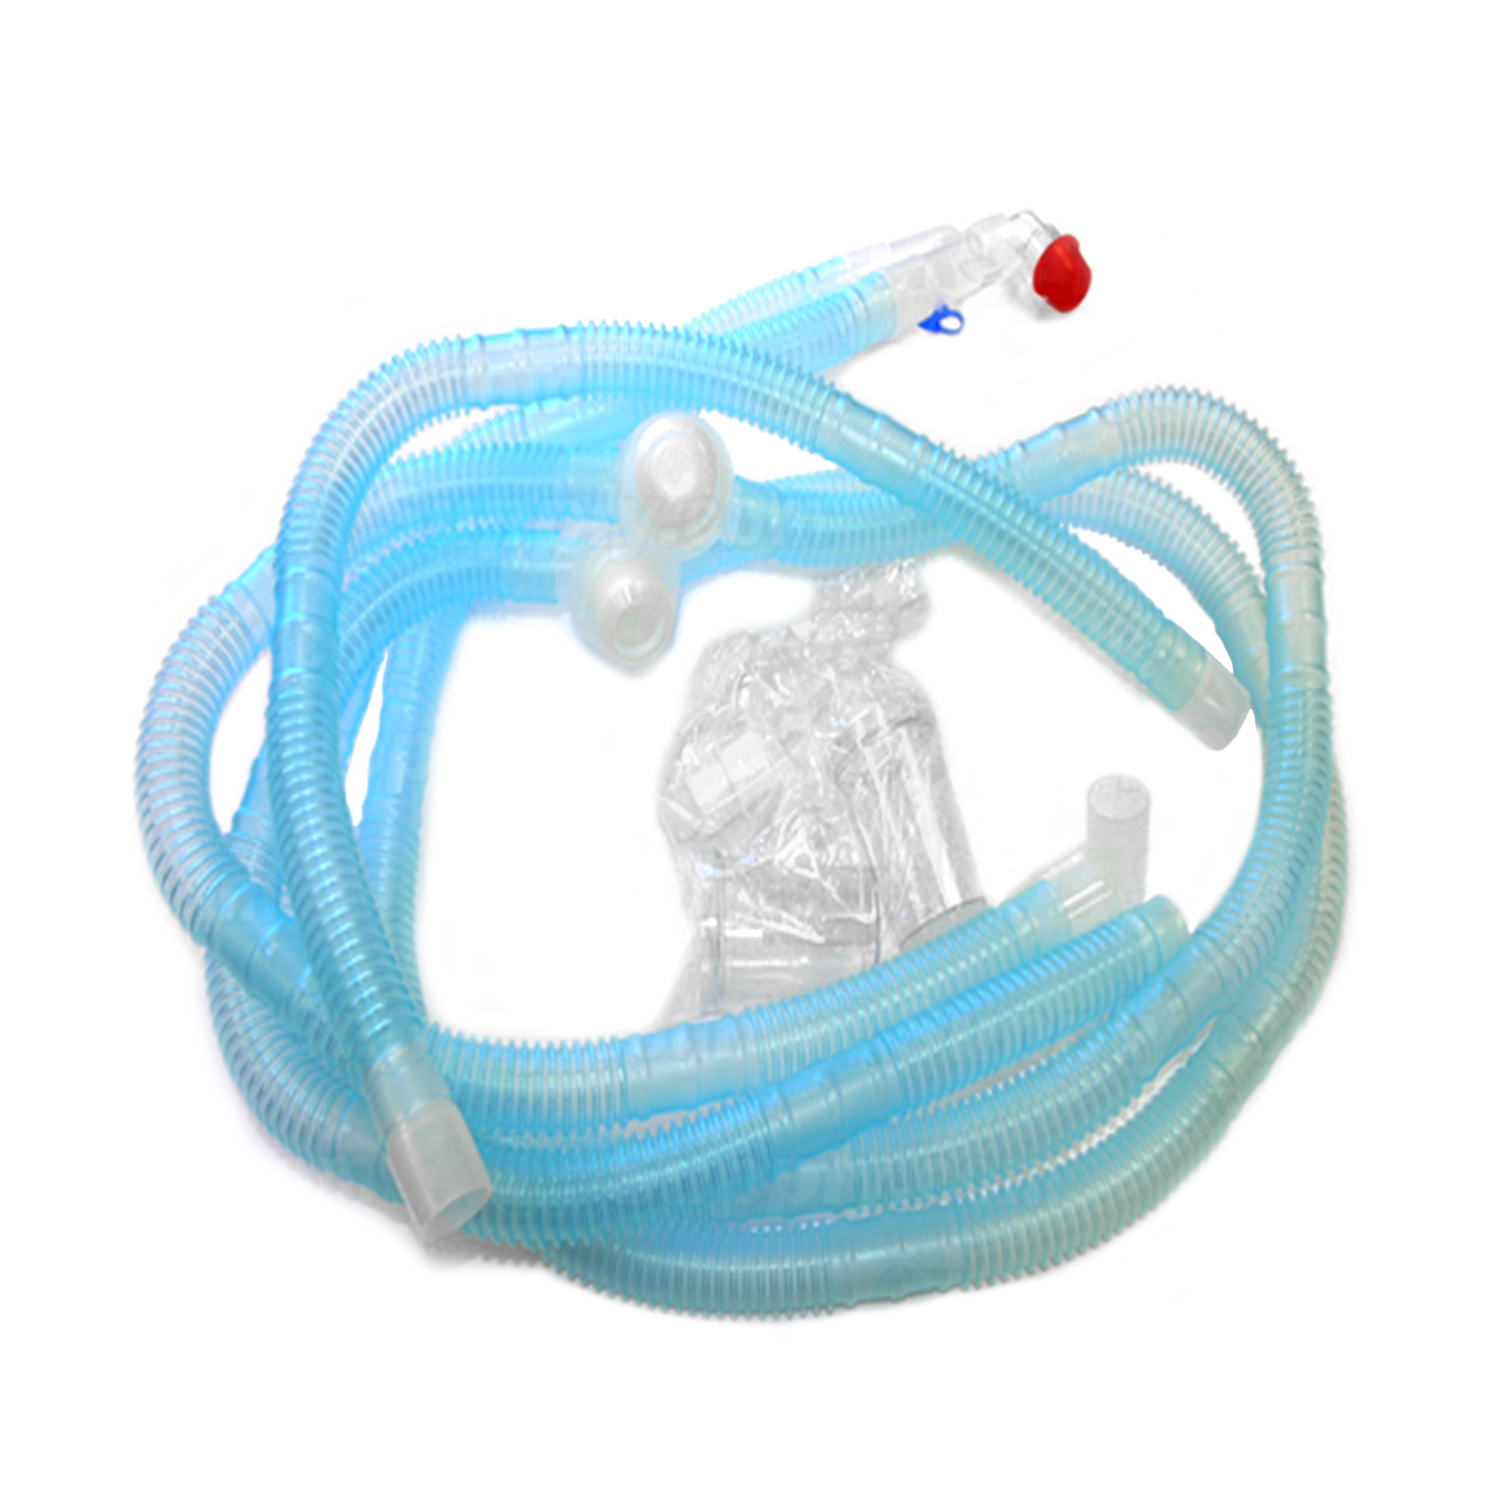 大多数呼吸道呼吸器的成人呼吸呼吸电路